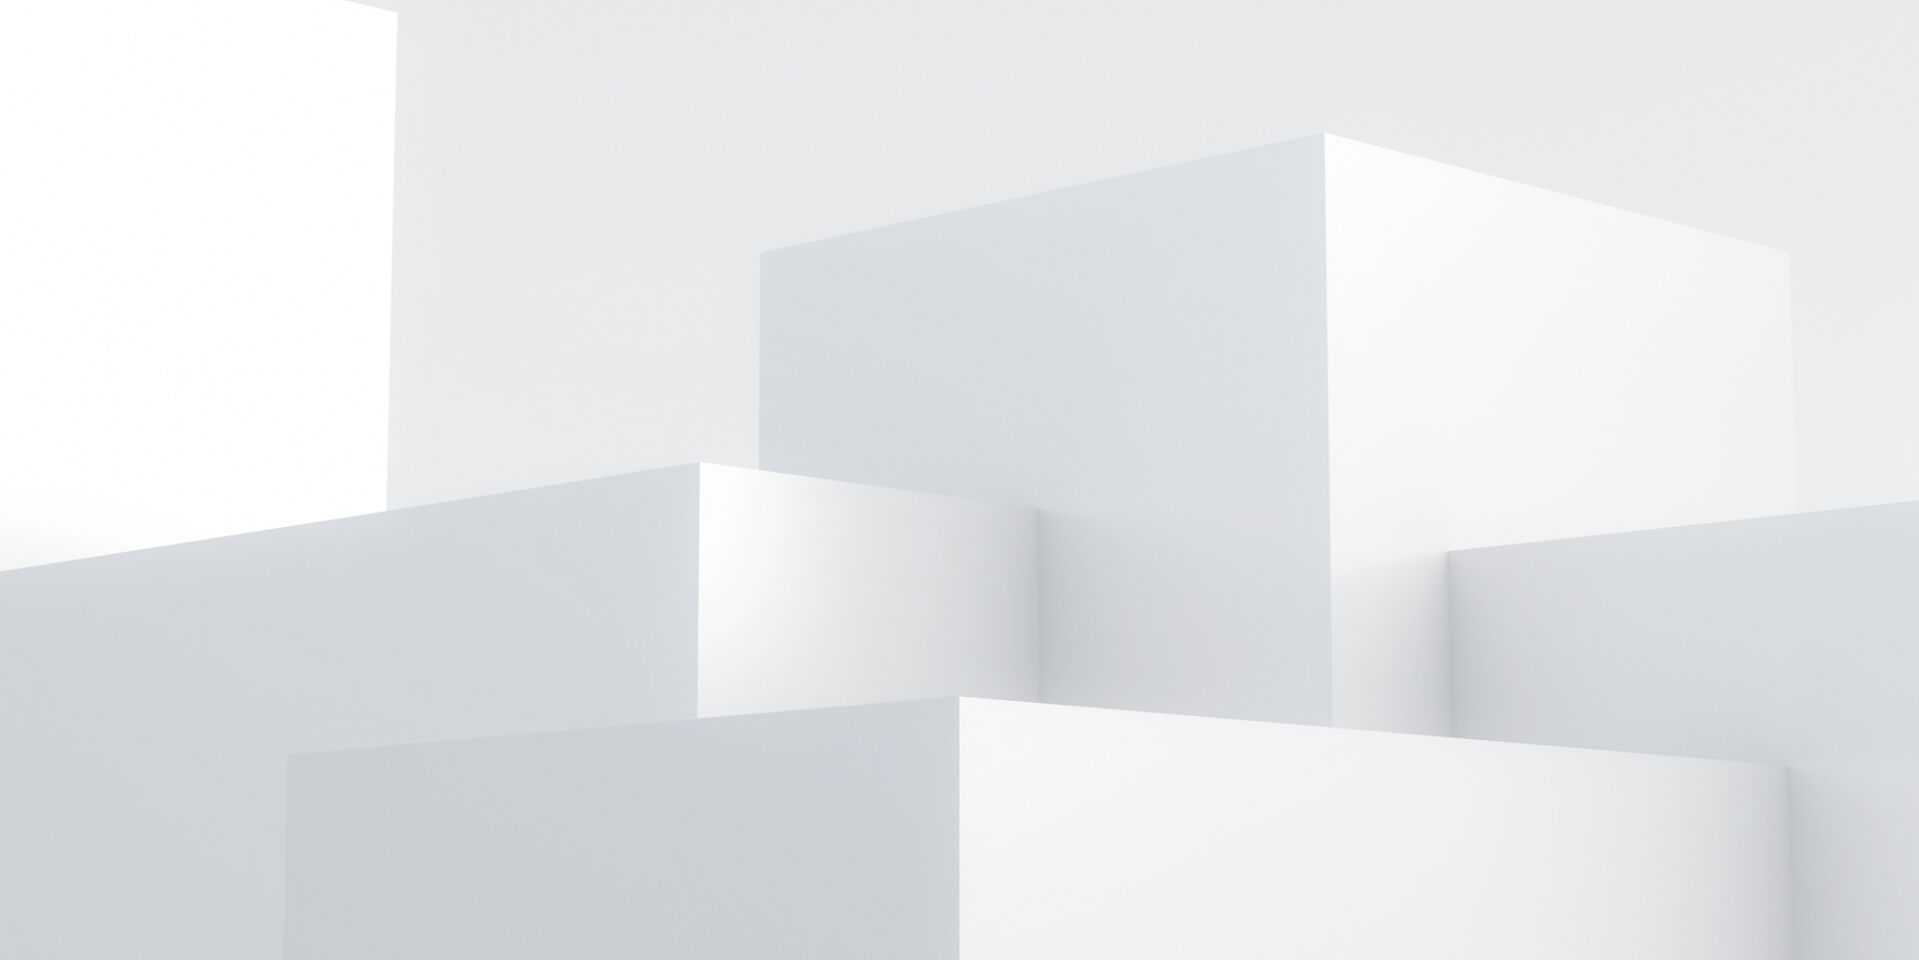 Eine abstrakte Abbildung von verschiedenen 3D-Quadern auf einem weißen Hintergrund